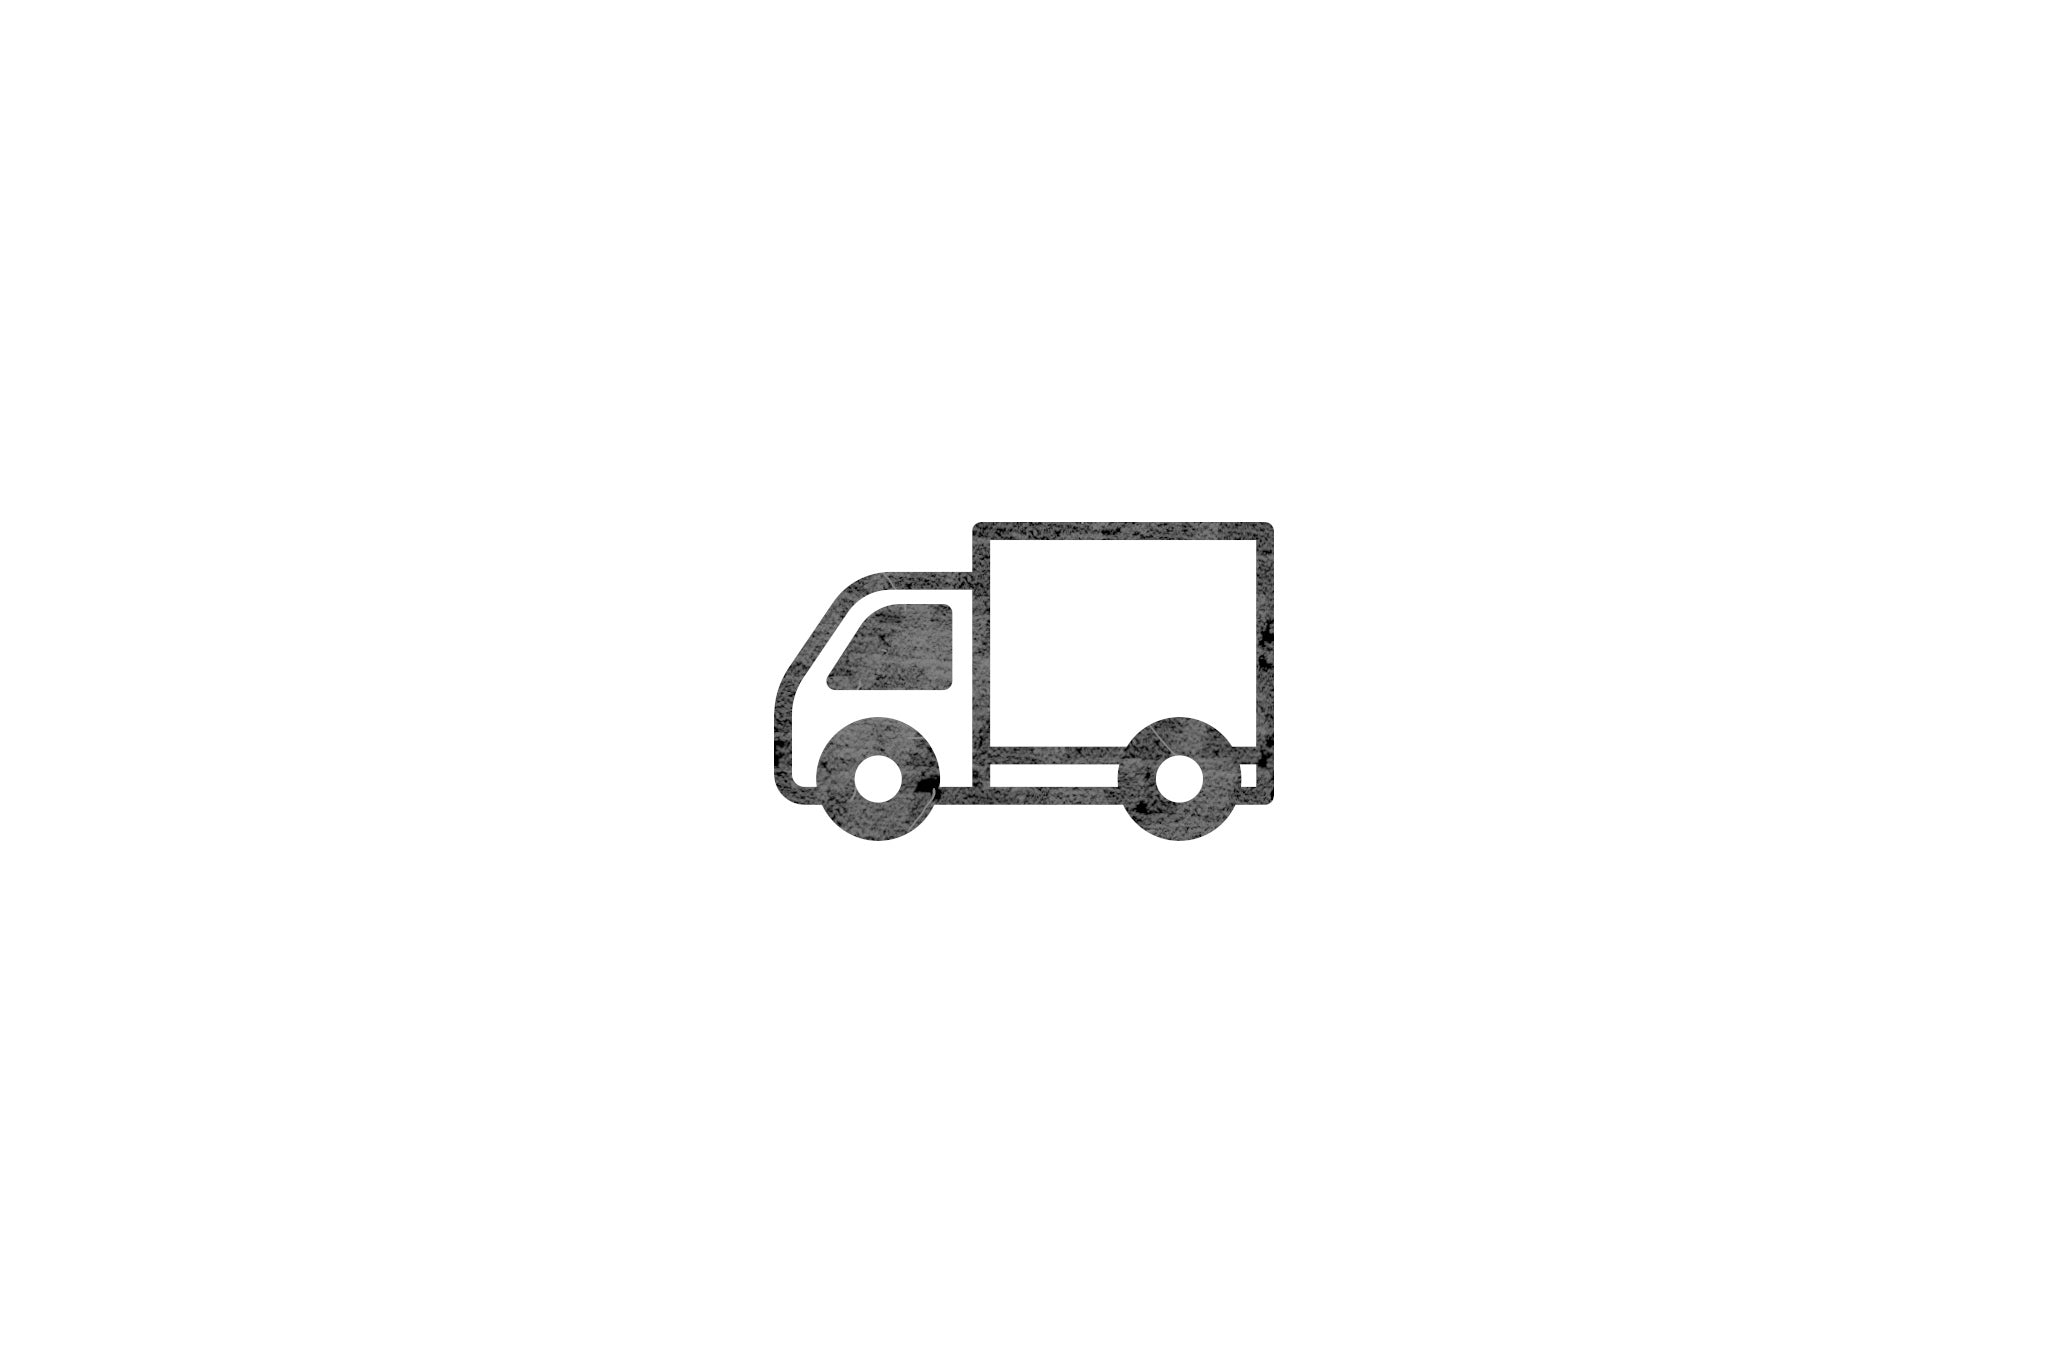 Houten ecologische symbool stempel met symbool van een vrachtwagen